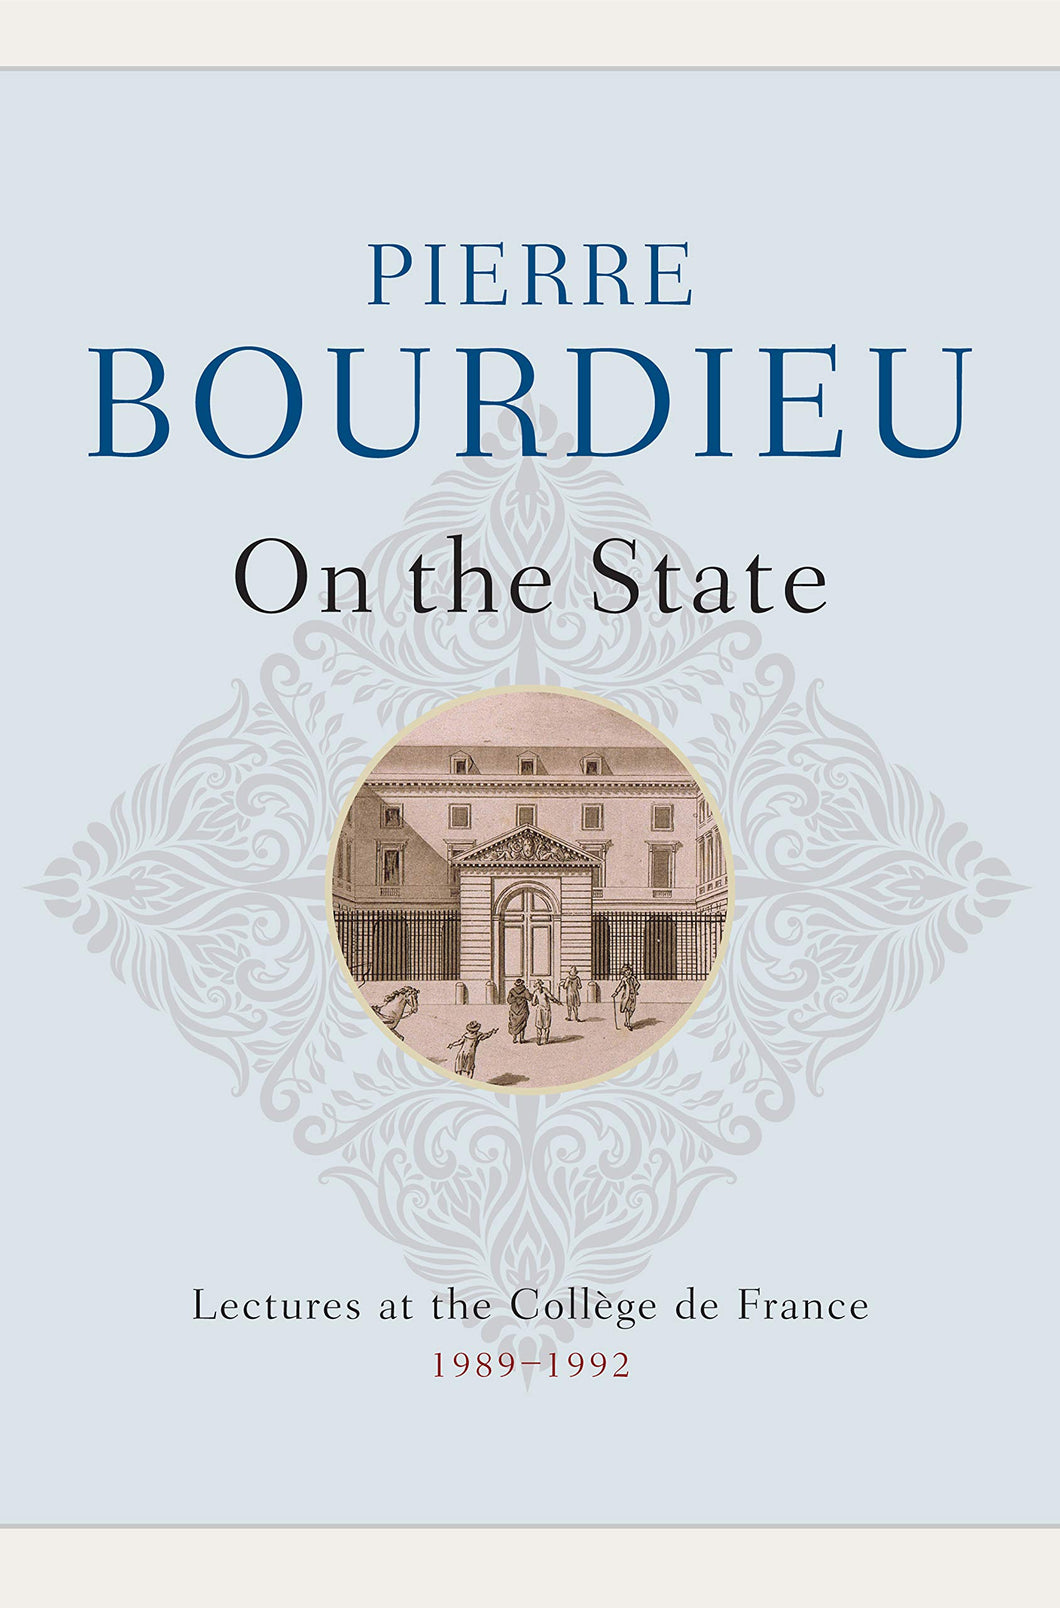 On the State : Lectures at the College de France, 1989 - 1992 ร้านหนังสือและสิ่งของ เป็นร้านหนังสือภาษาอังกฤษหายาก และร้านกาแฟ หรือ บุ๊คคาเฟ่ ตั้งอยู่สุขุมวิท กรุงเทพ